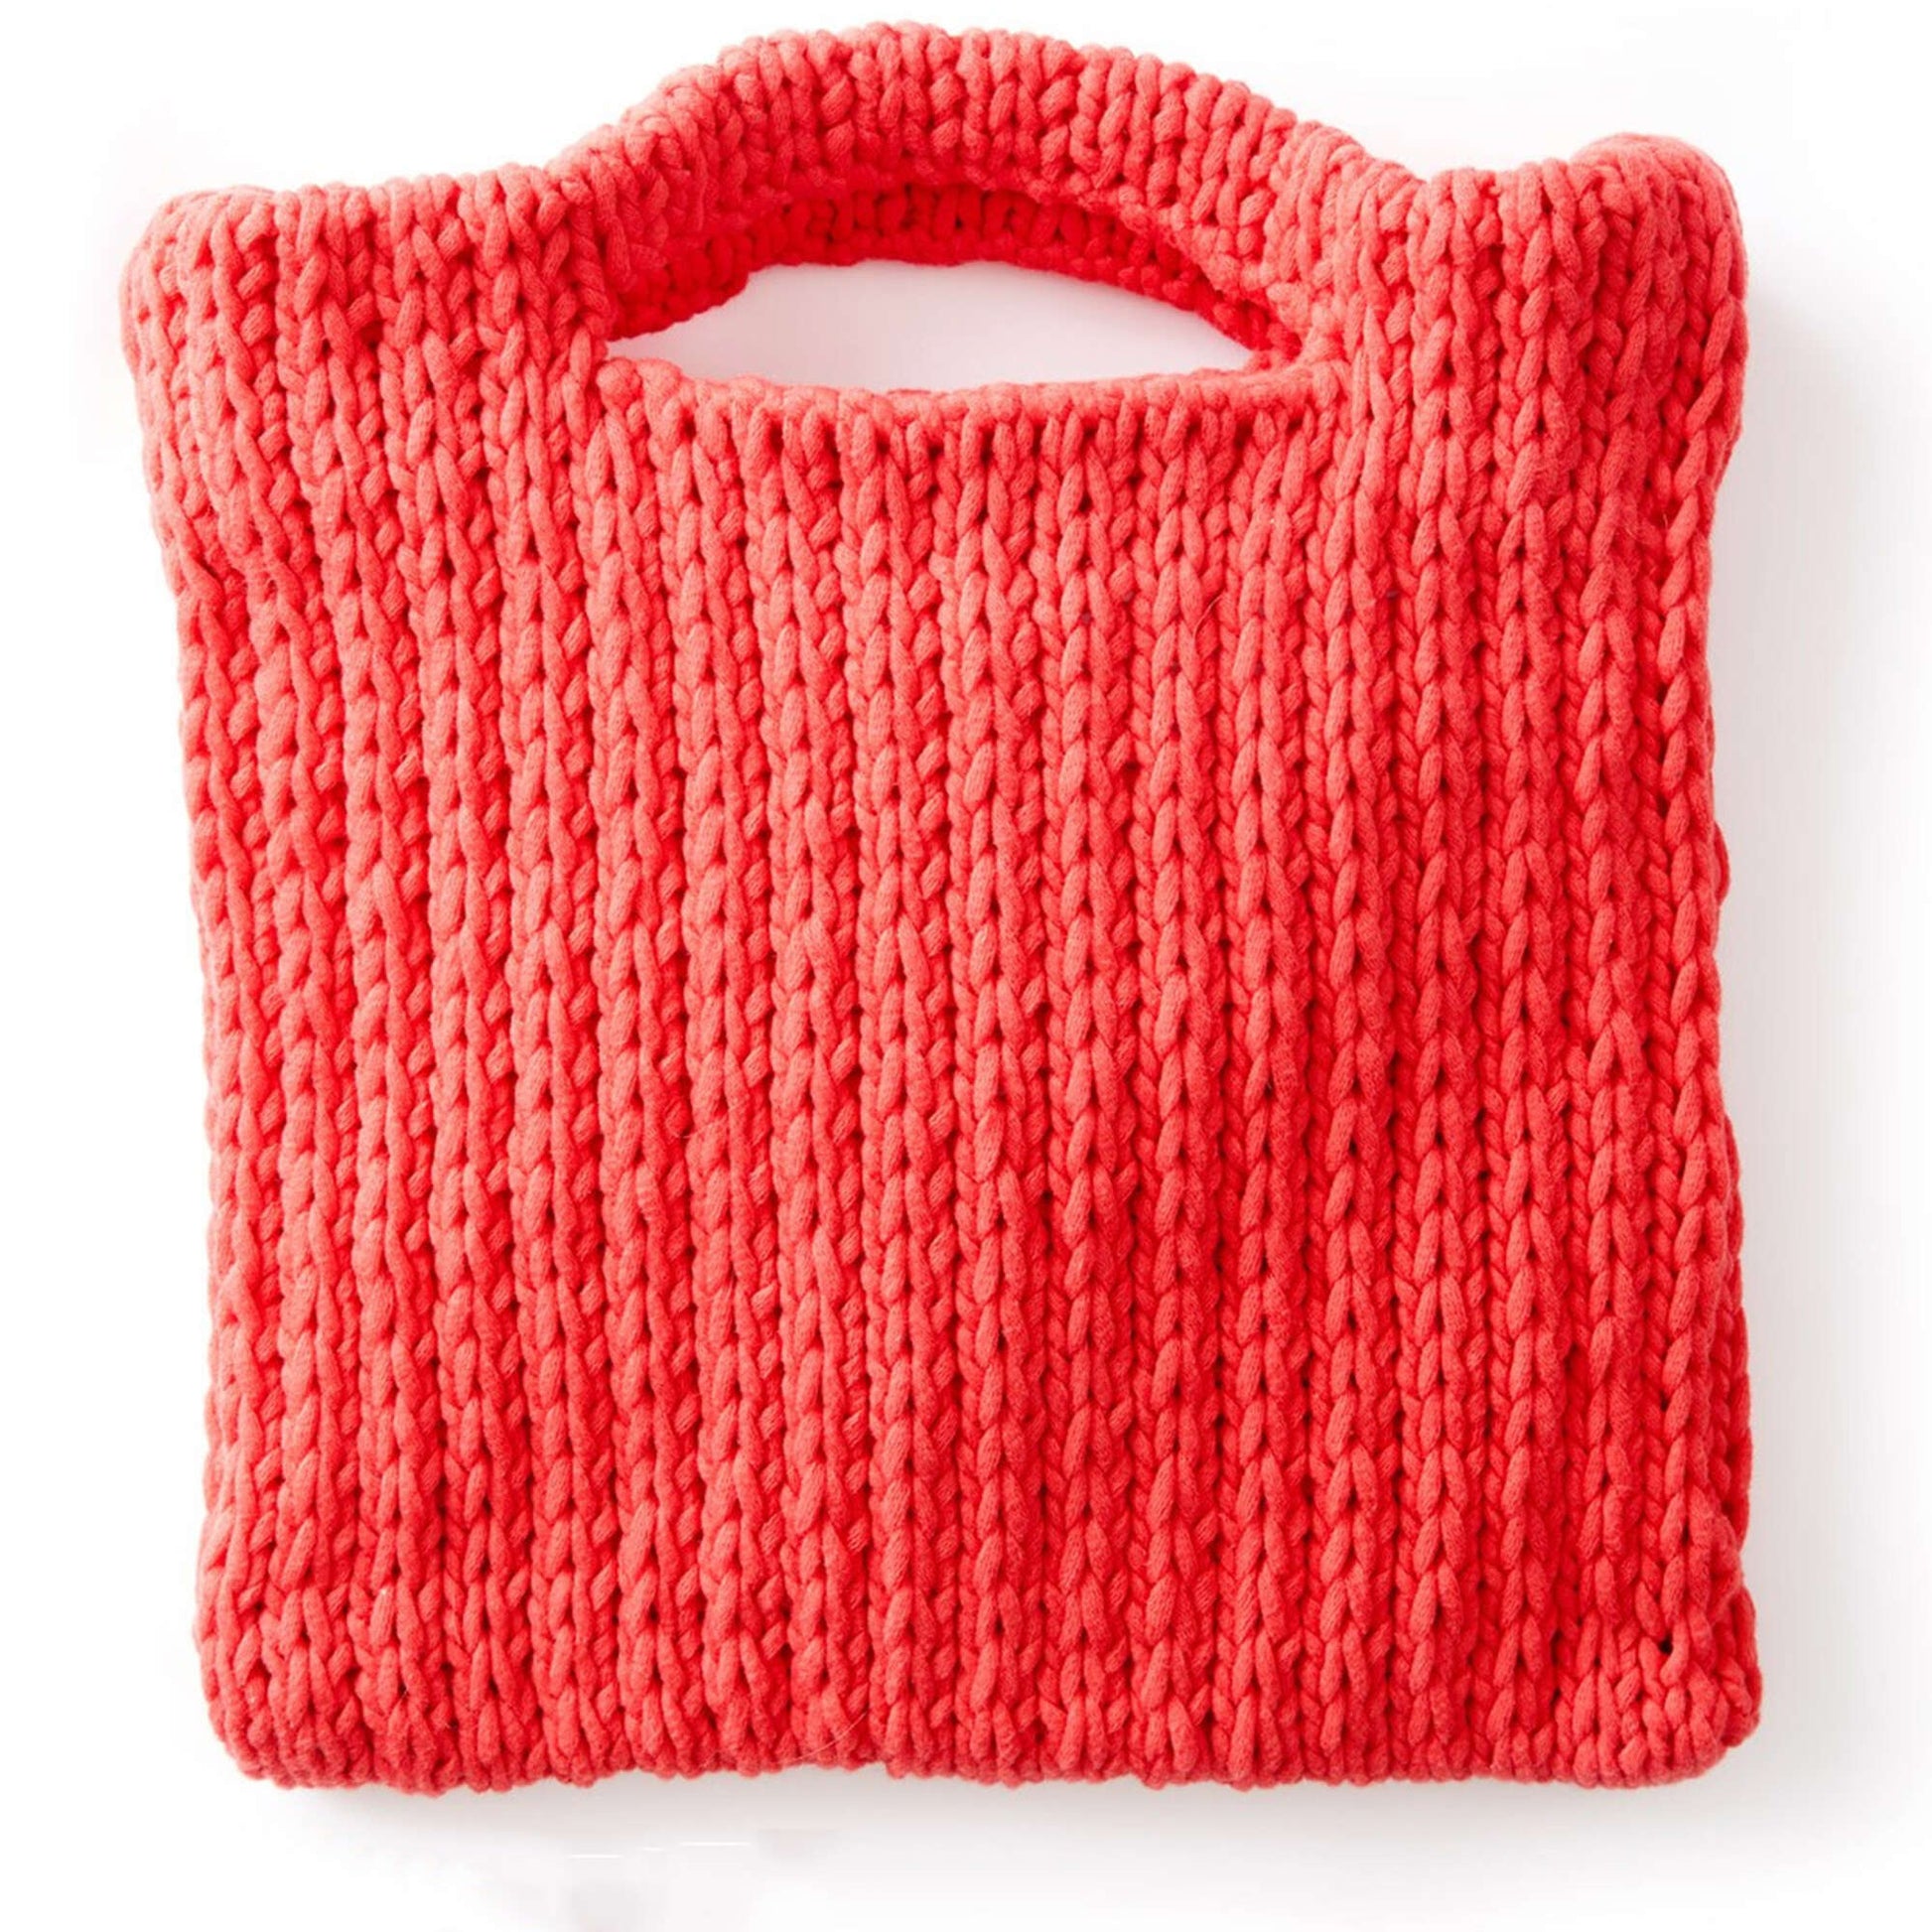 Free Bernat That's My Bag, Baby Knit Pattern